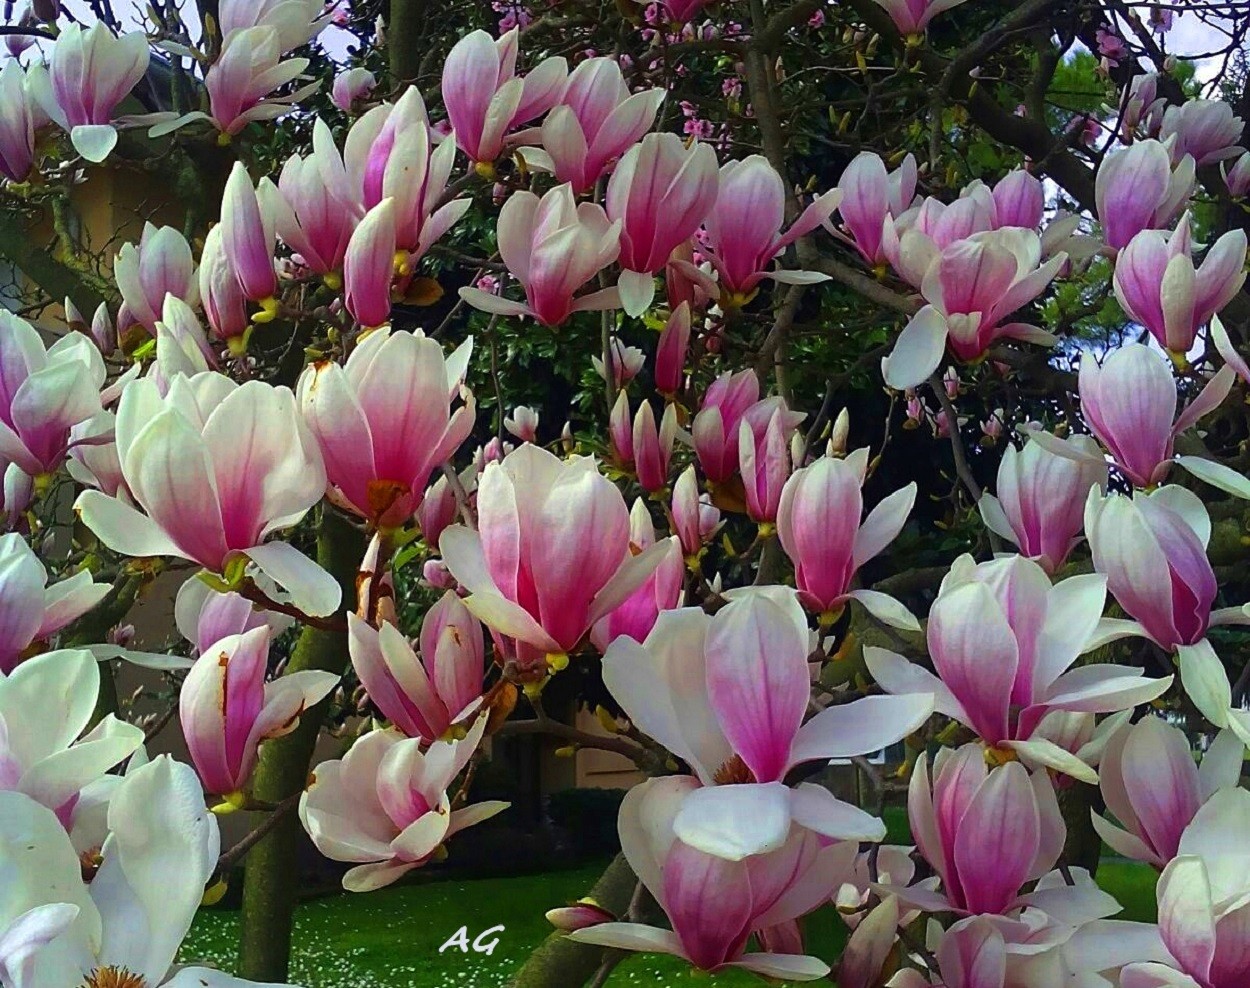 "Magnolias en flor" de Ana Giorno